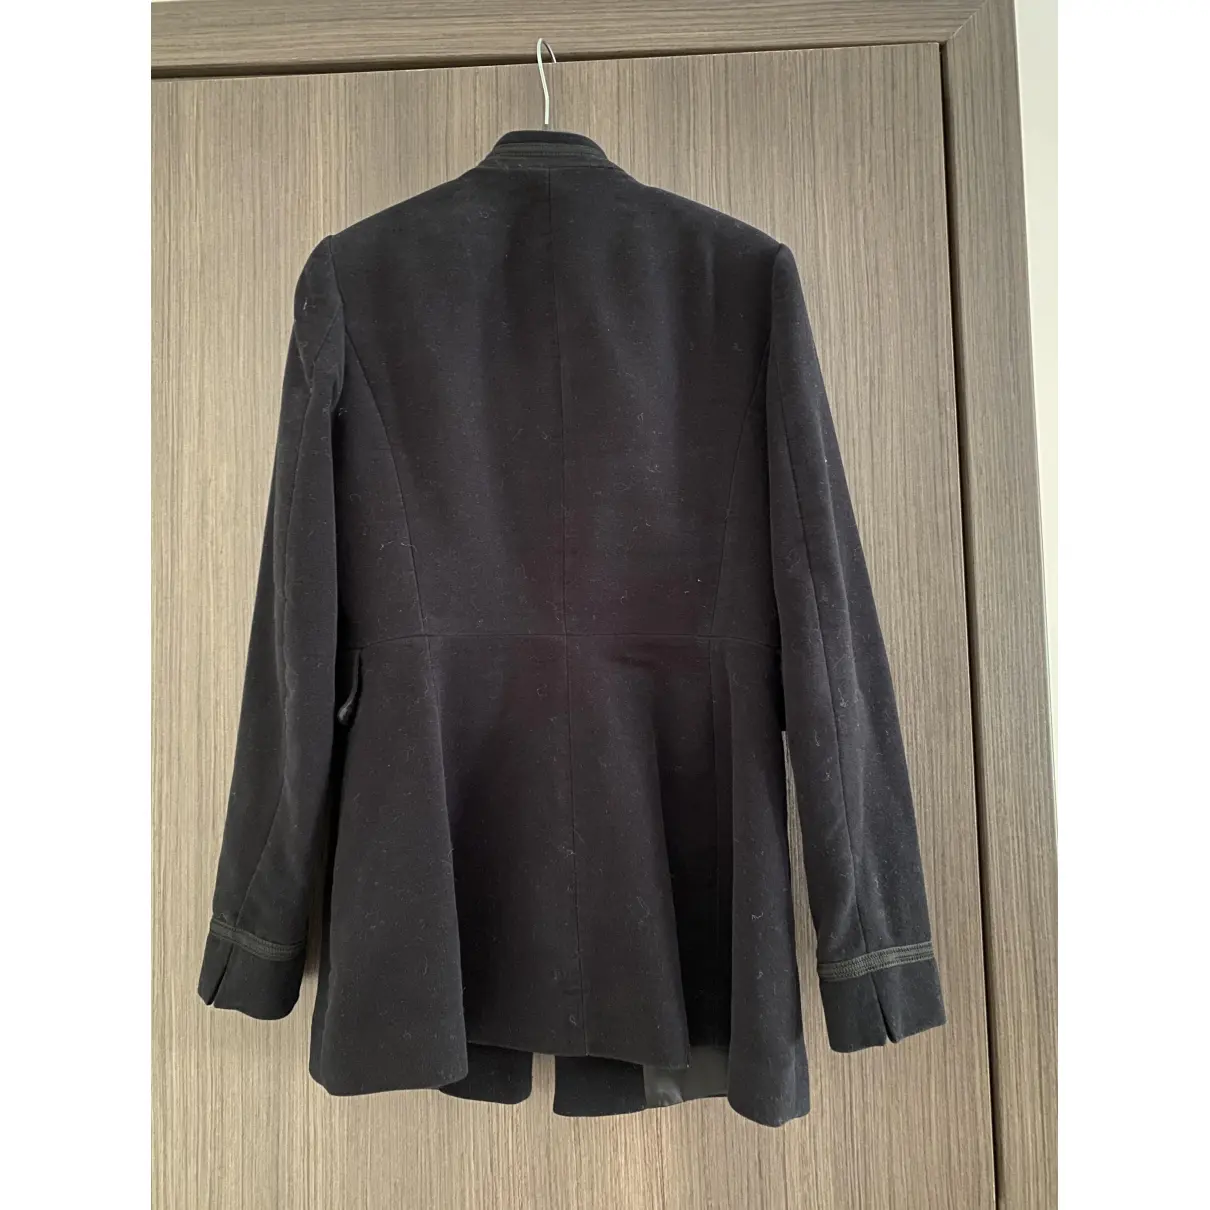 Buy Zara Velvet jacket online